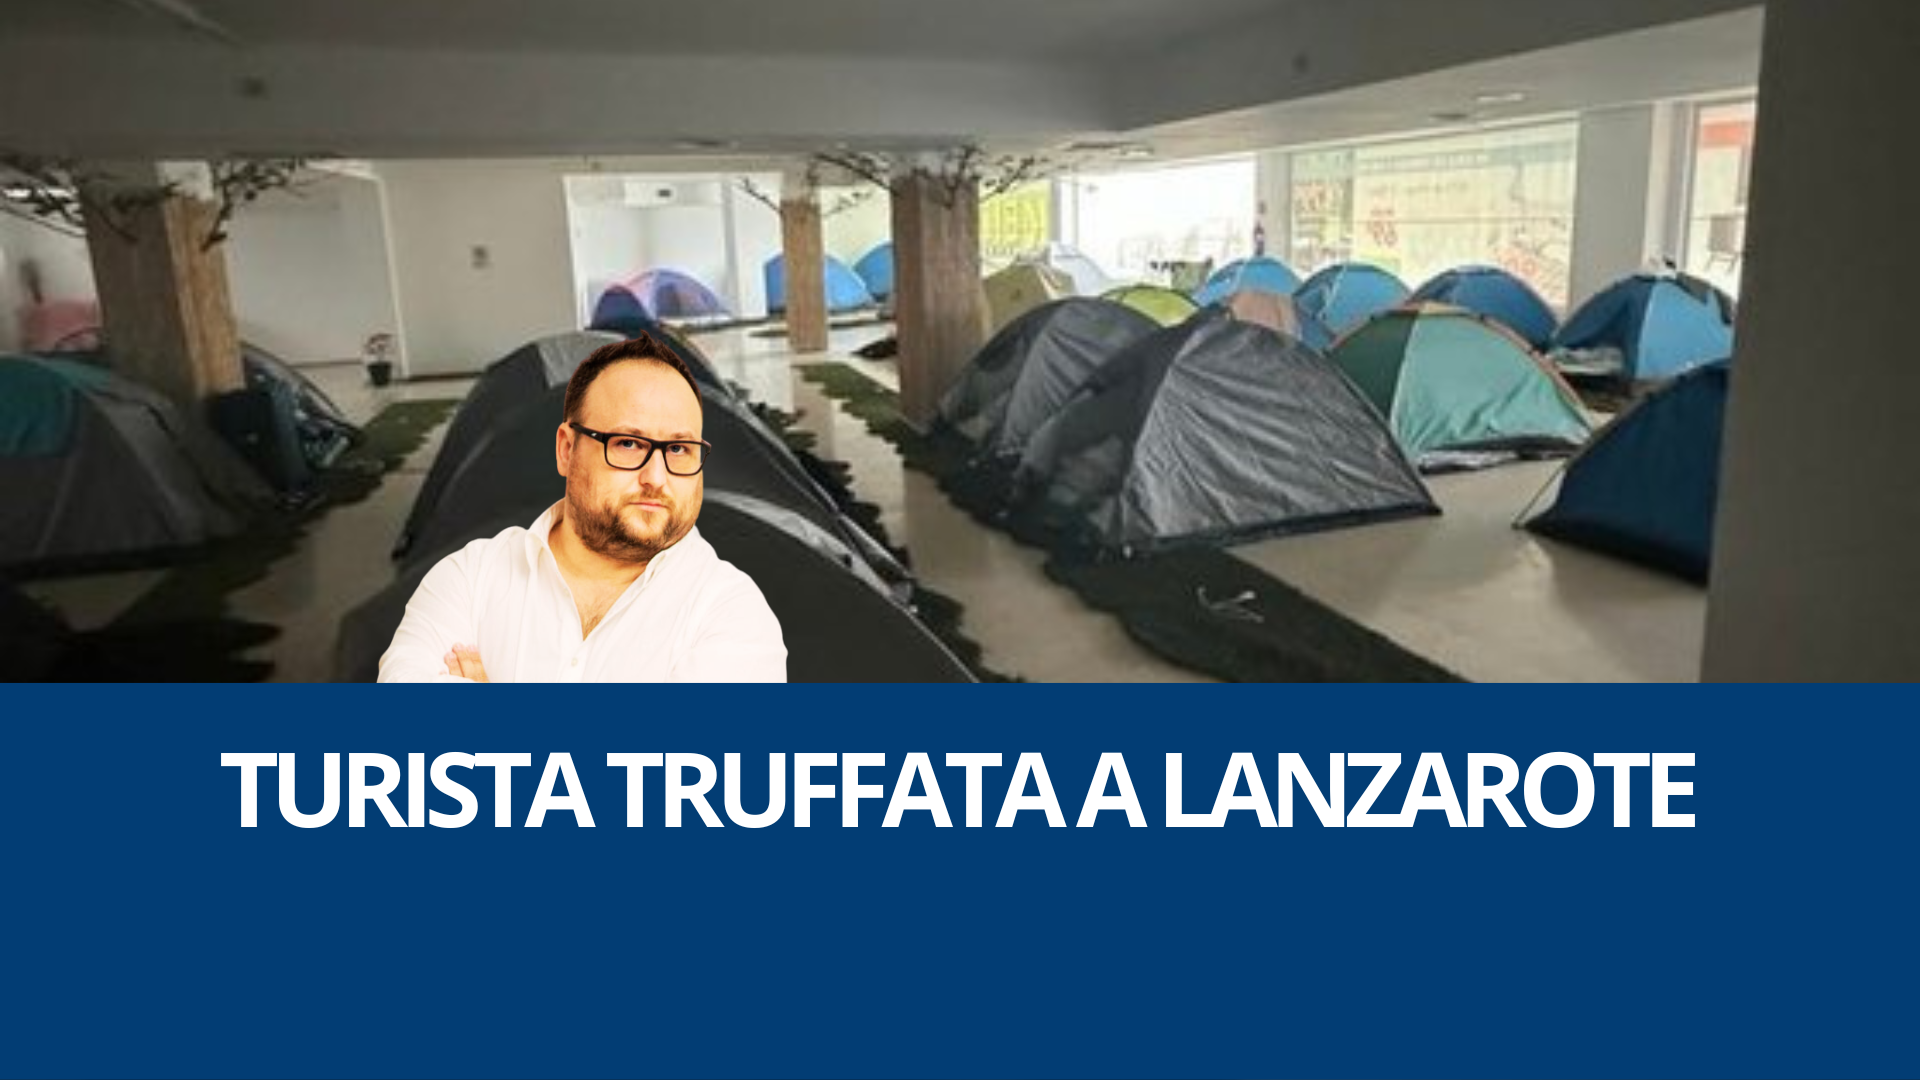 Turista truffata a Lanzarote: la casa vacanze era una tenda da campeggio. Ne parliamo su alexlabbate.com con Alex L'Abbate